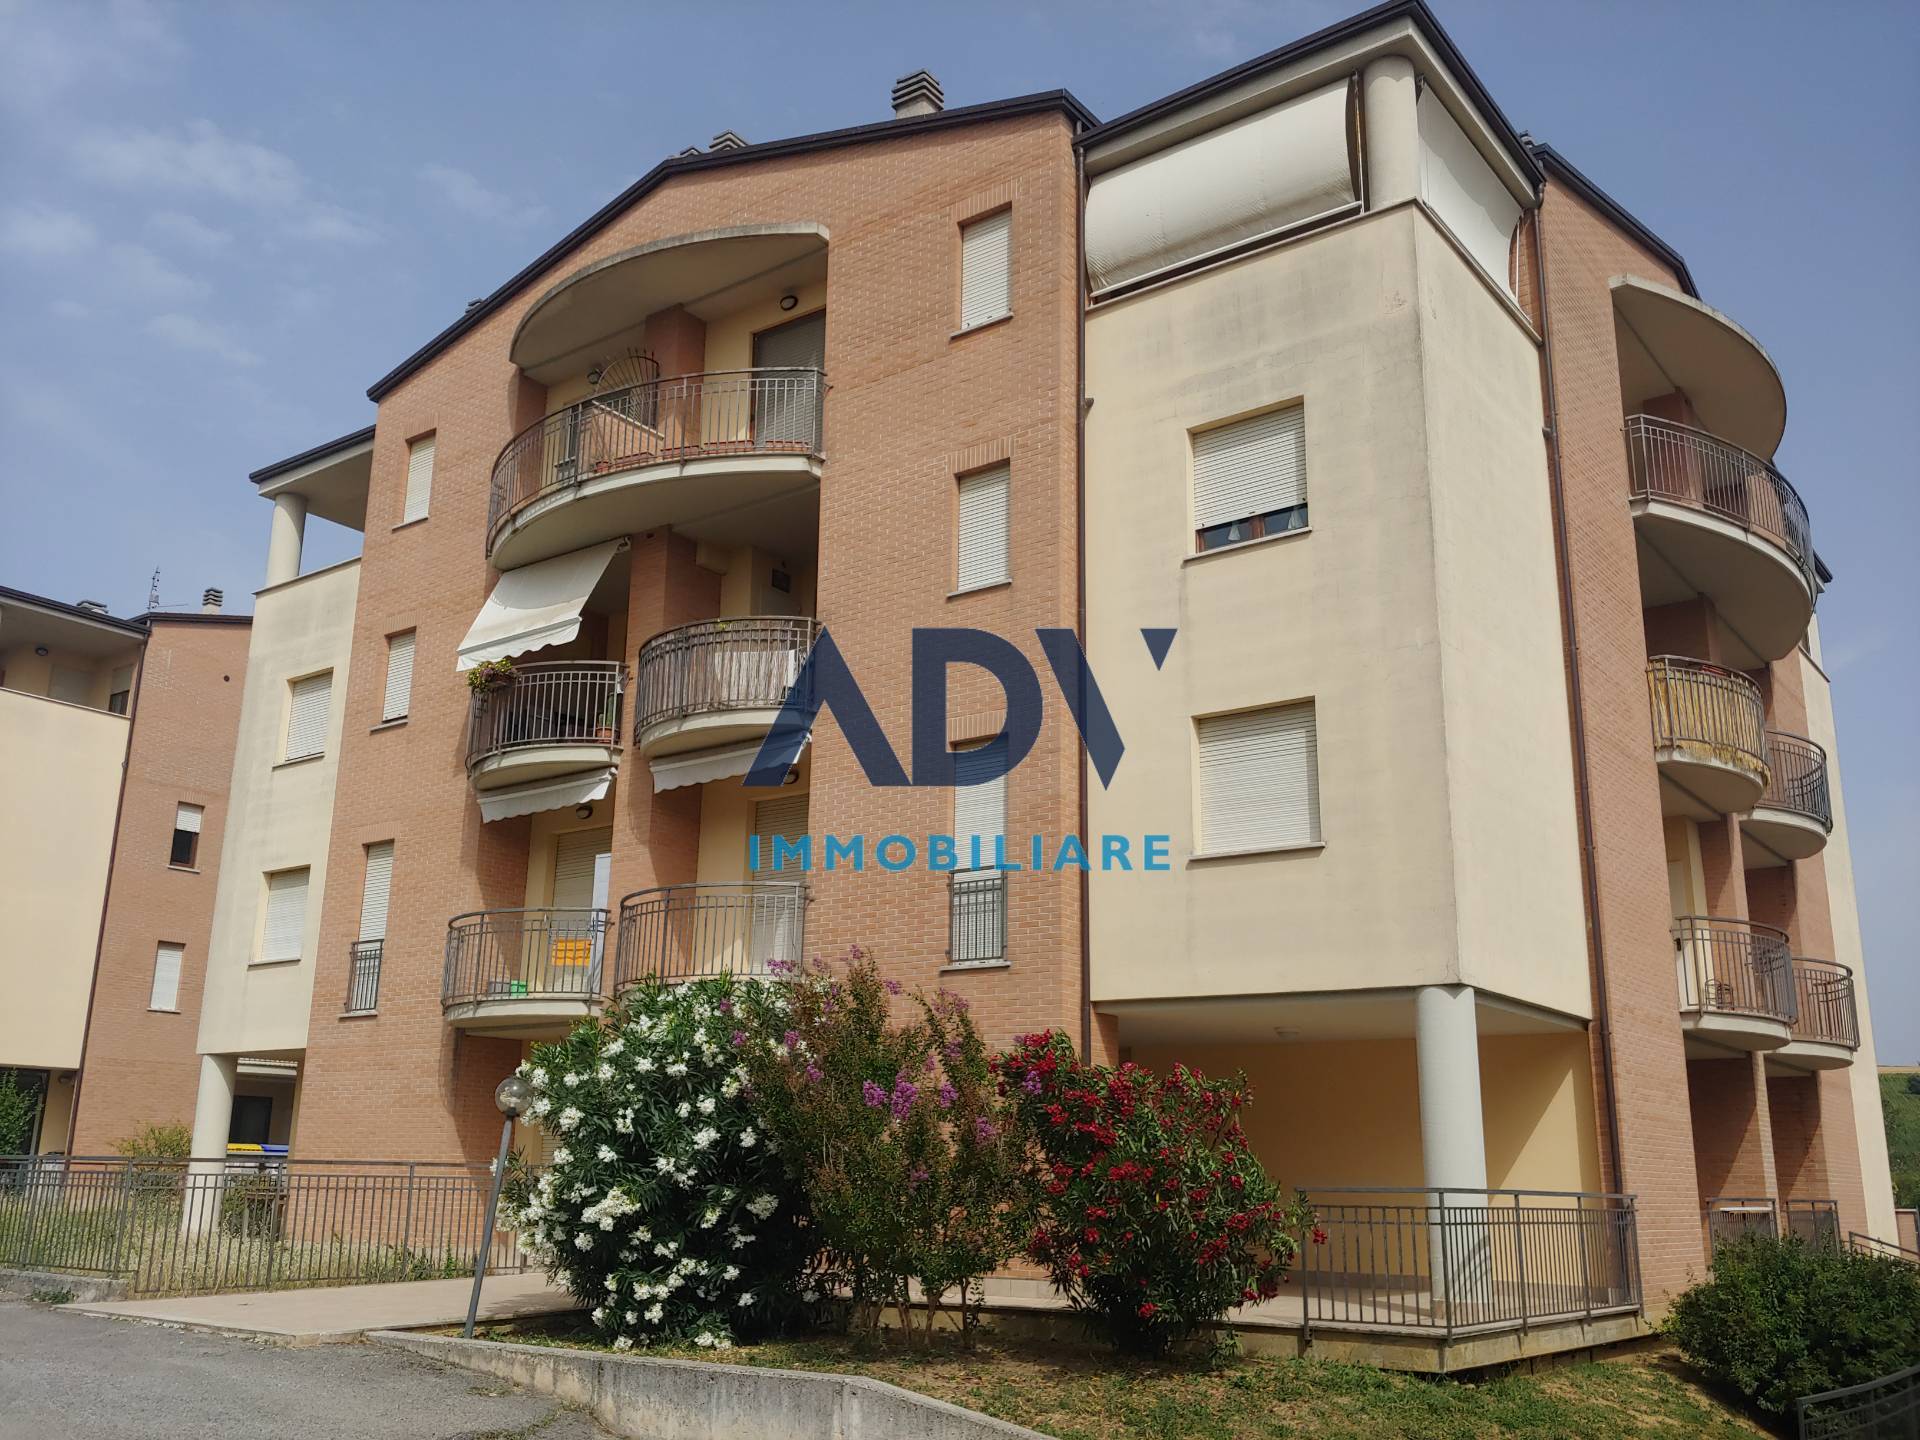 Appartamento in vendita a Perugia, 2 locali, zona mbella, prezzo € 60.000 | PortaleAgenzieImmobiliari.it